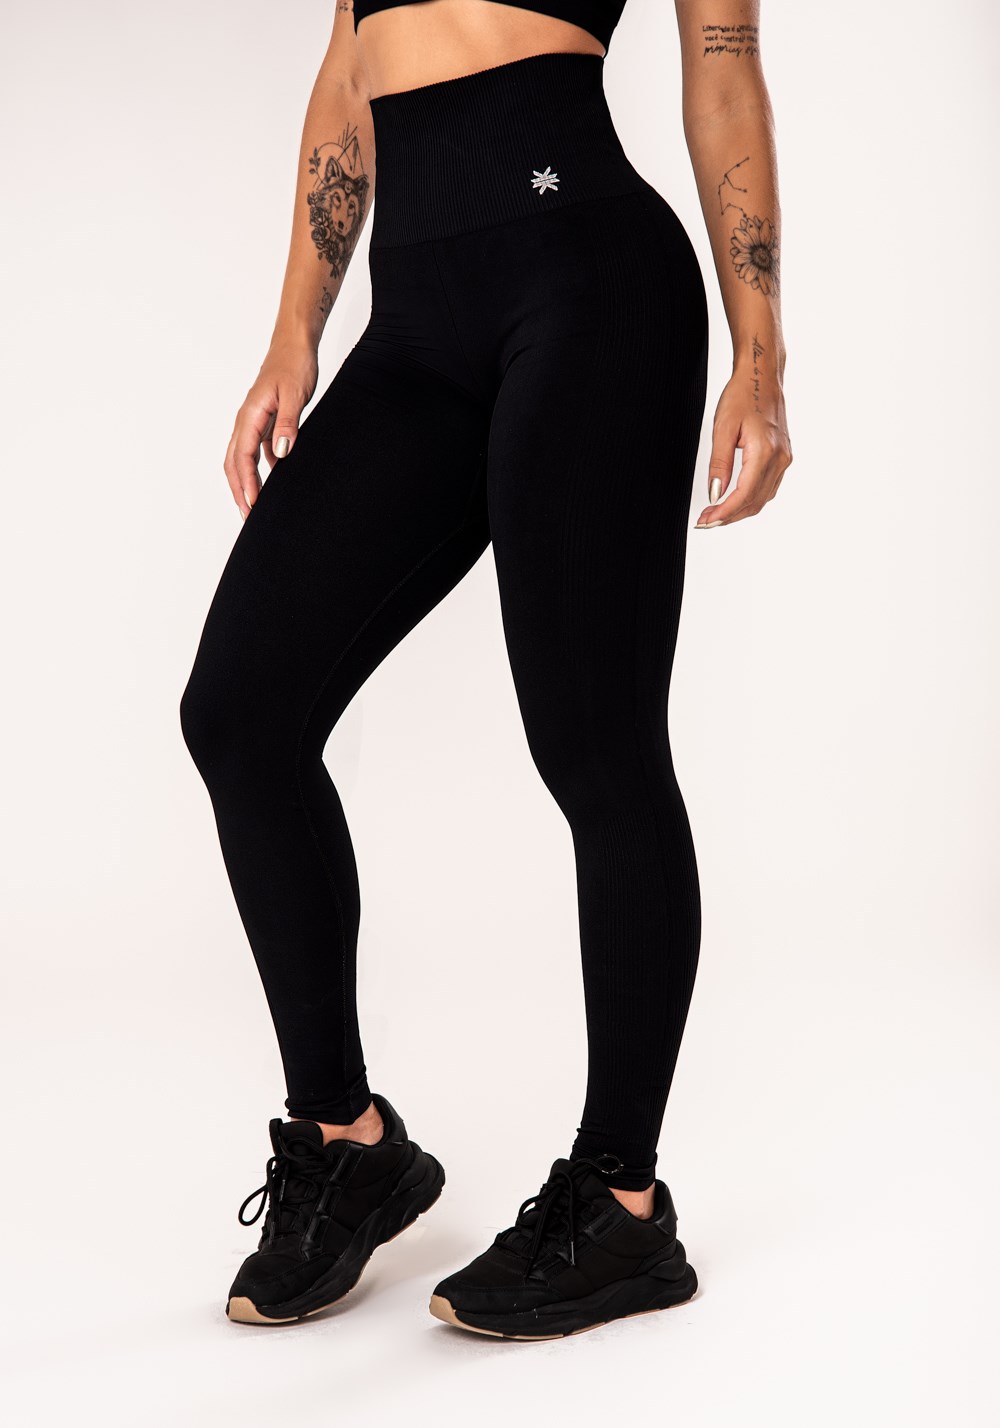 Legging fitness feminina preto com cós alto seamless